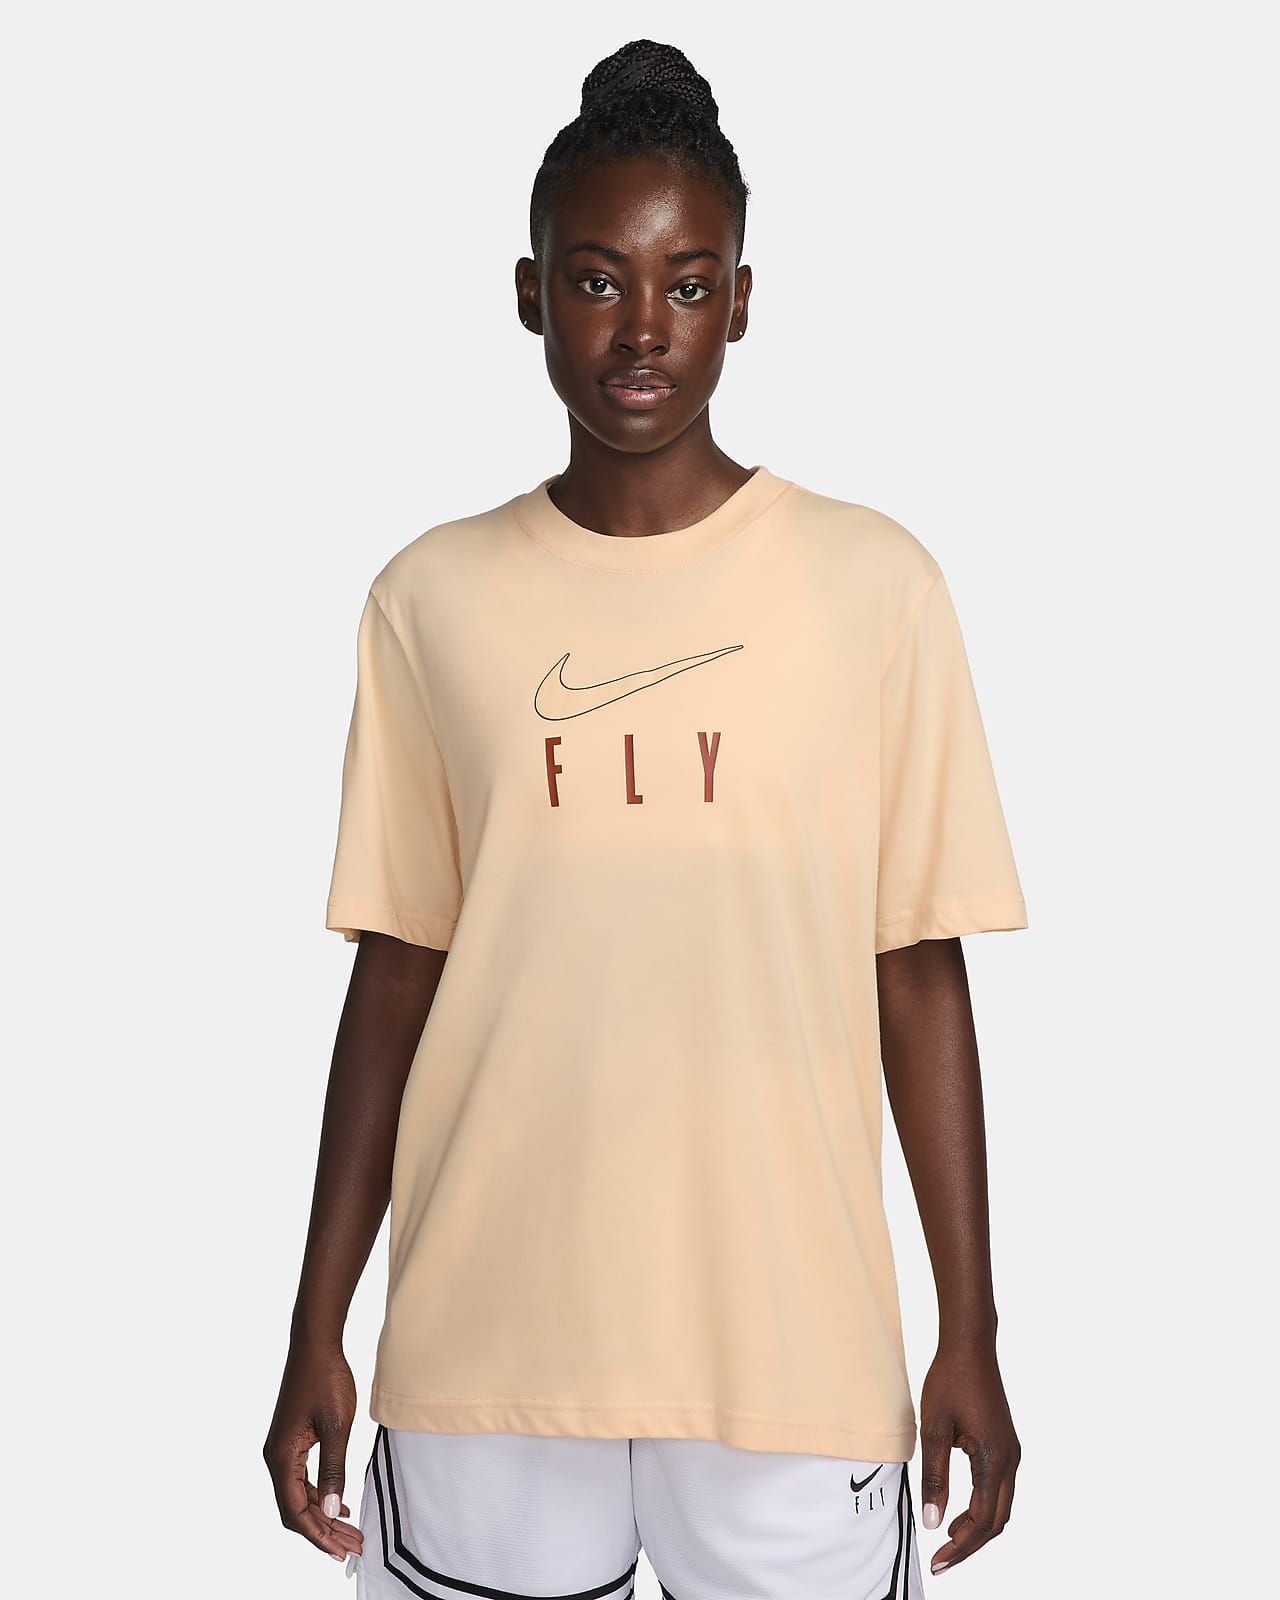 Nike Dri-FIT Swoosh Fly Women's T-Shirt. Nike LU